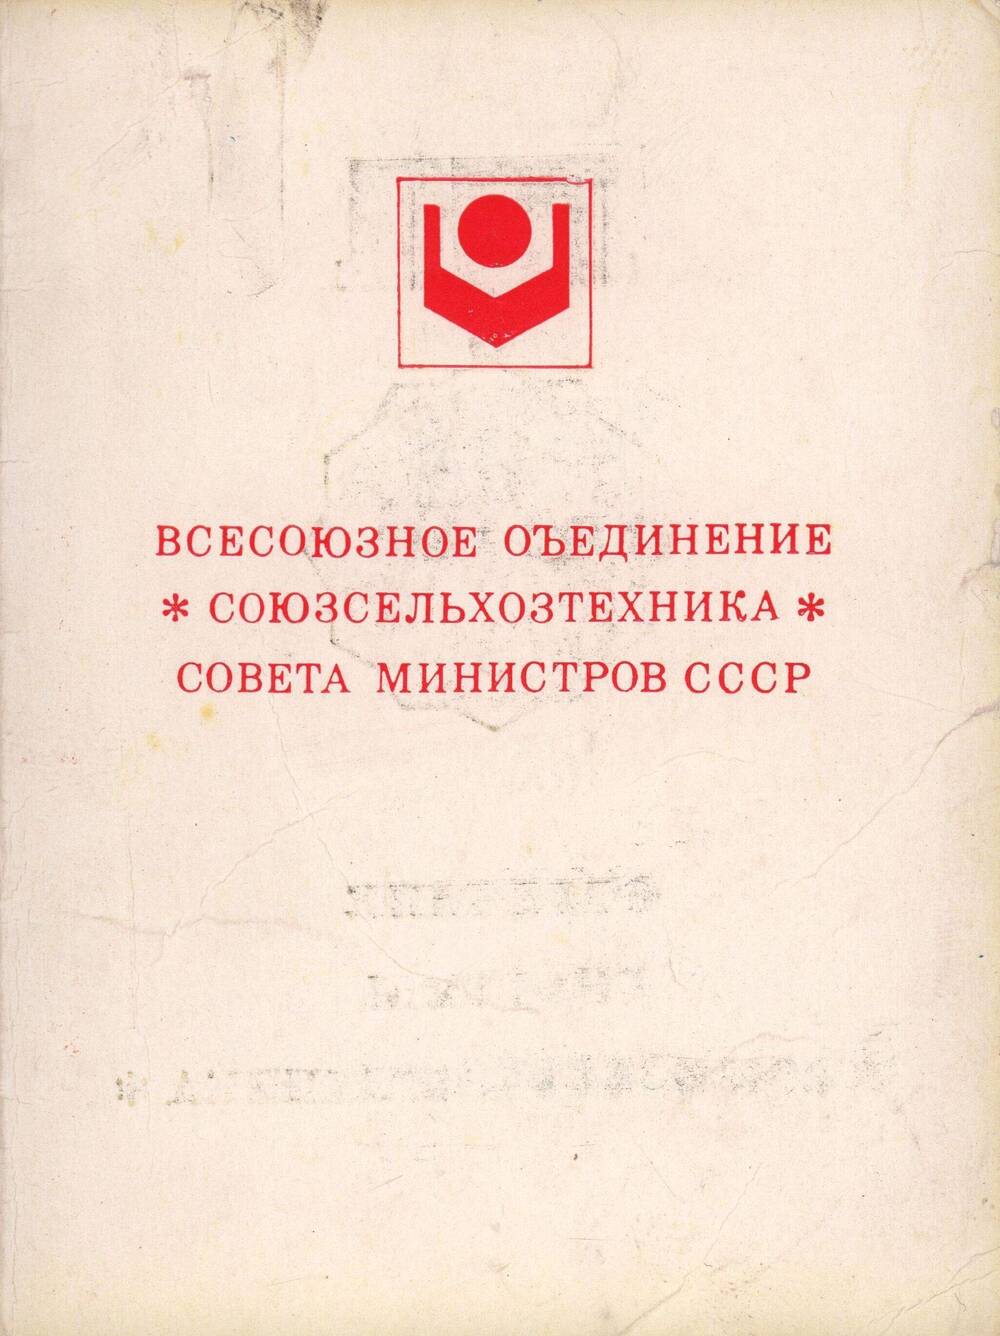 Удостоверение Кинчина Николая Ивановича от 31 октября 1974 года «Отличник системы « Сельхозтехника».